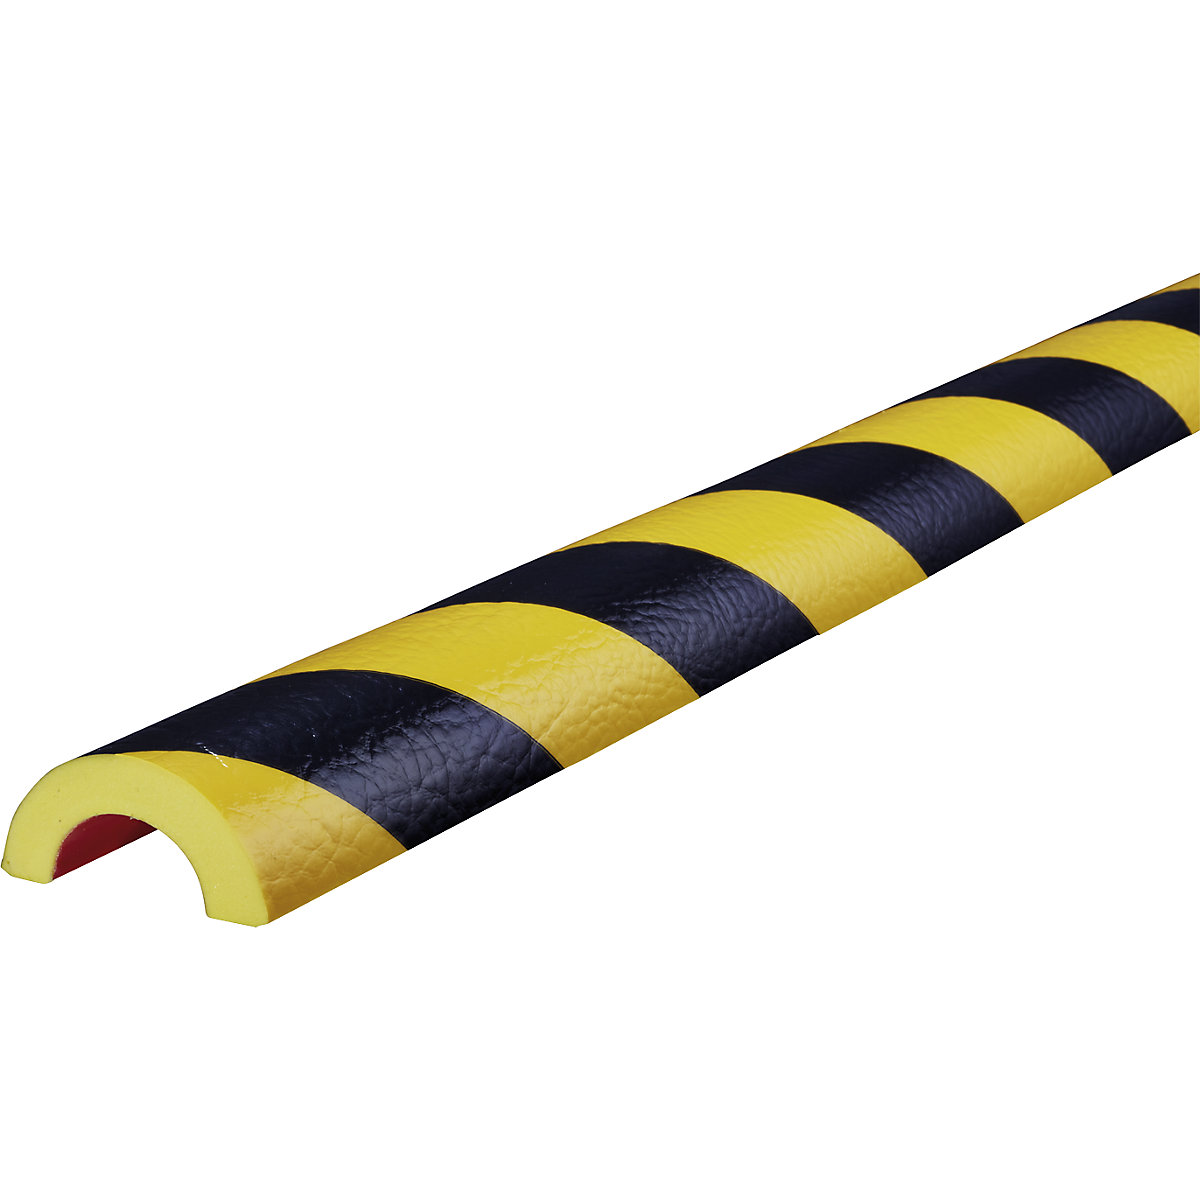 Protection des tuyaux Knuffi® – SHG, type R30, 1 rouleau de 50 m, noir/jaune